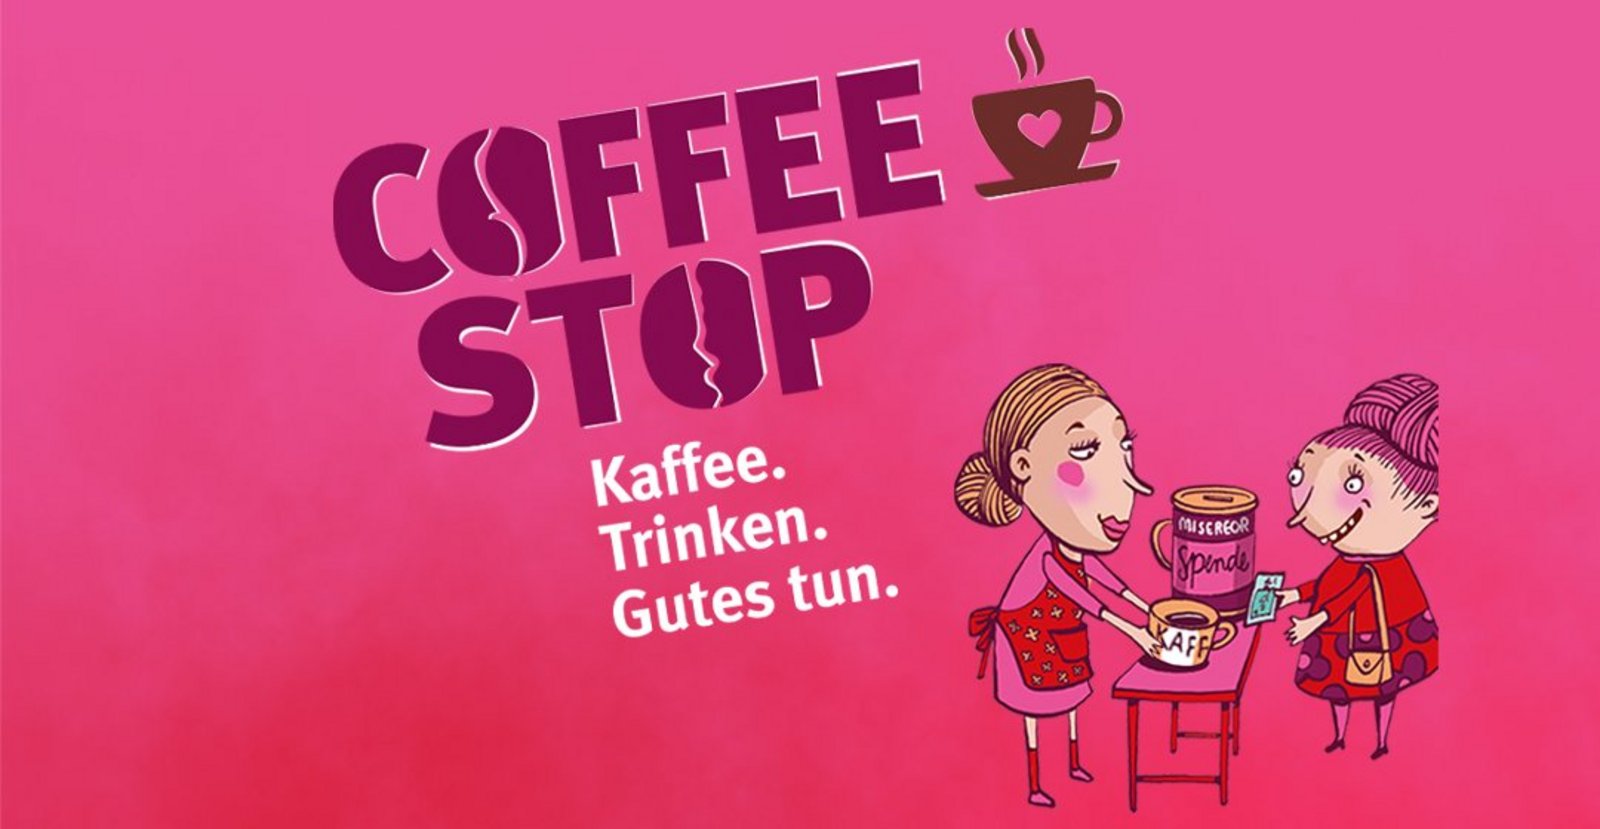 Kaffee gegen eine Spende ausschenken - das ist die Spendenaktion Coffee Stop